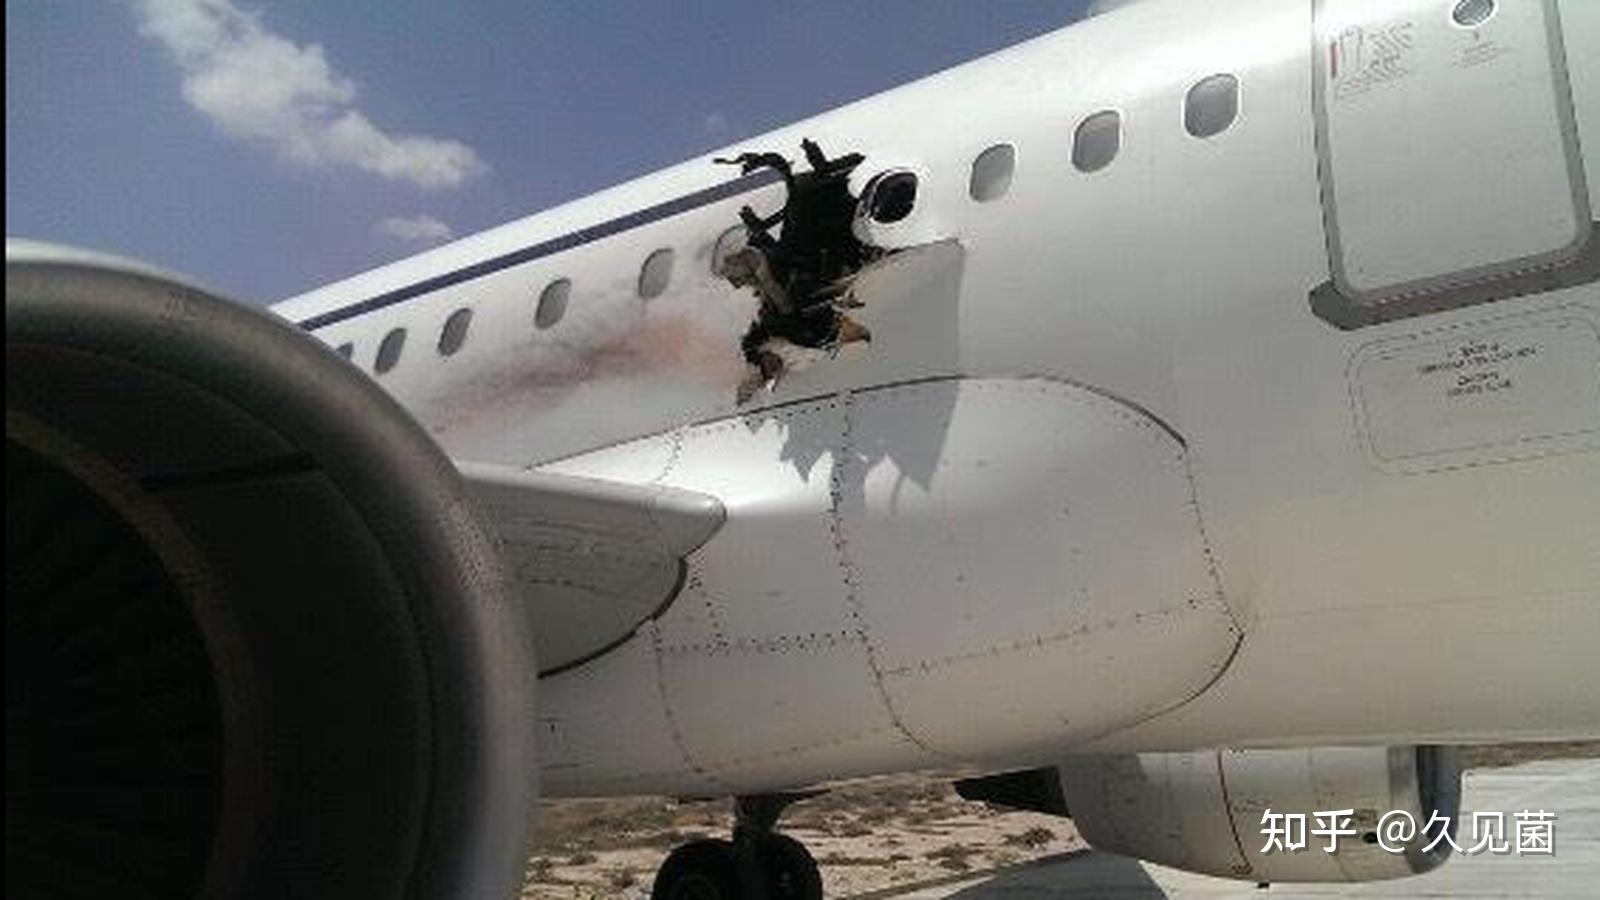 中国台湾的航空公司中华航空611号班机,也同样遭遇了飞机解体的空难